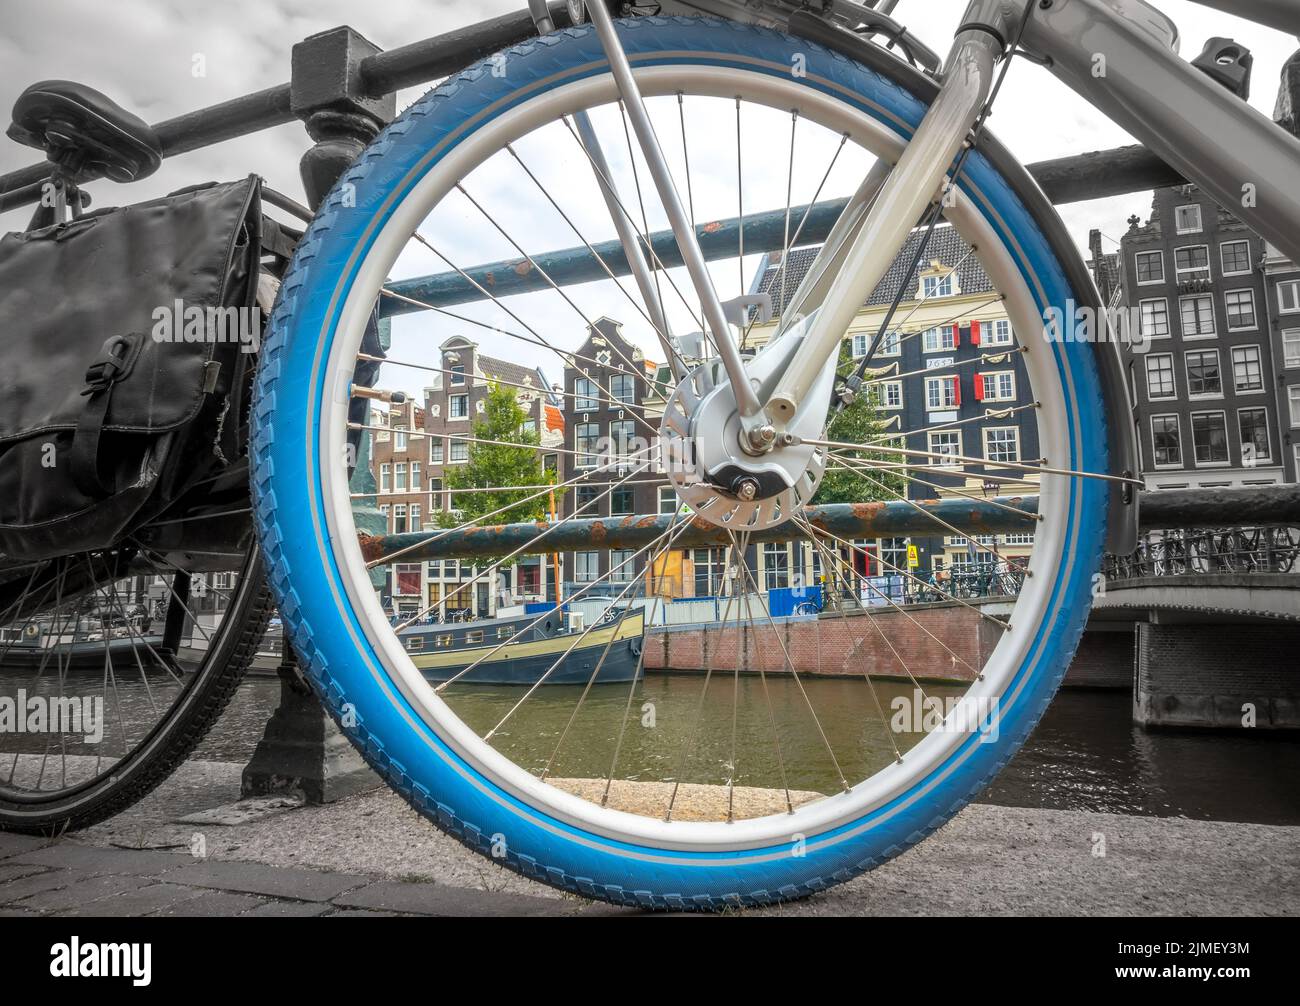 Amsterdam Canal Houses dans une roue de vélo Banque D'Images